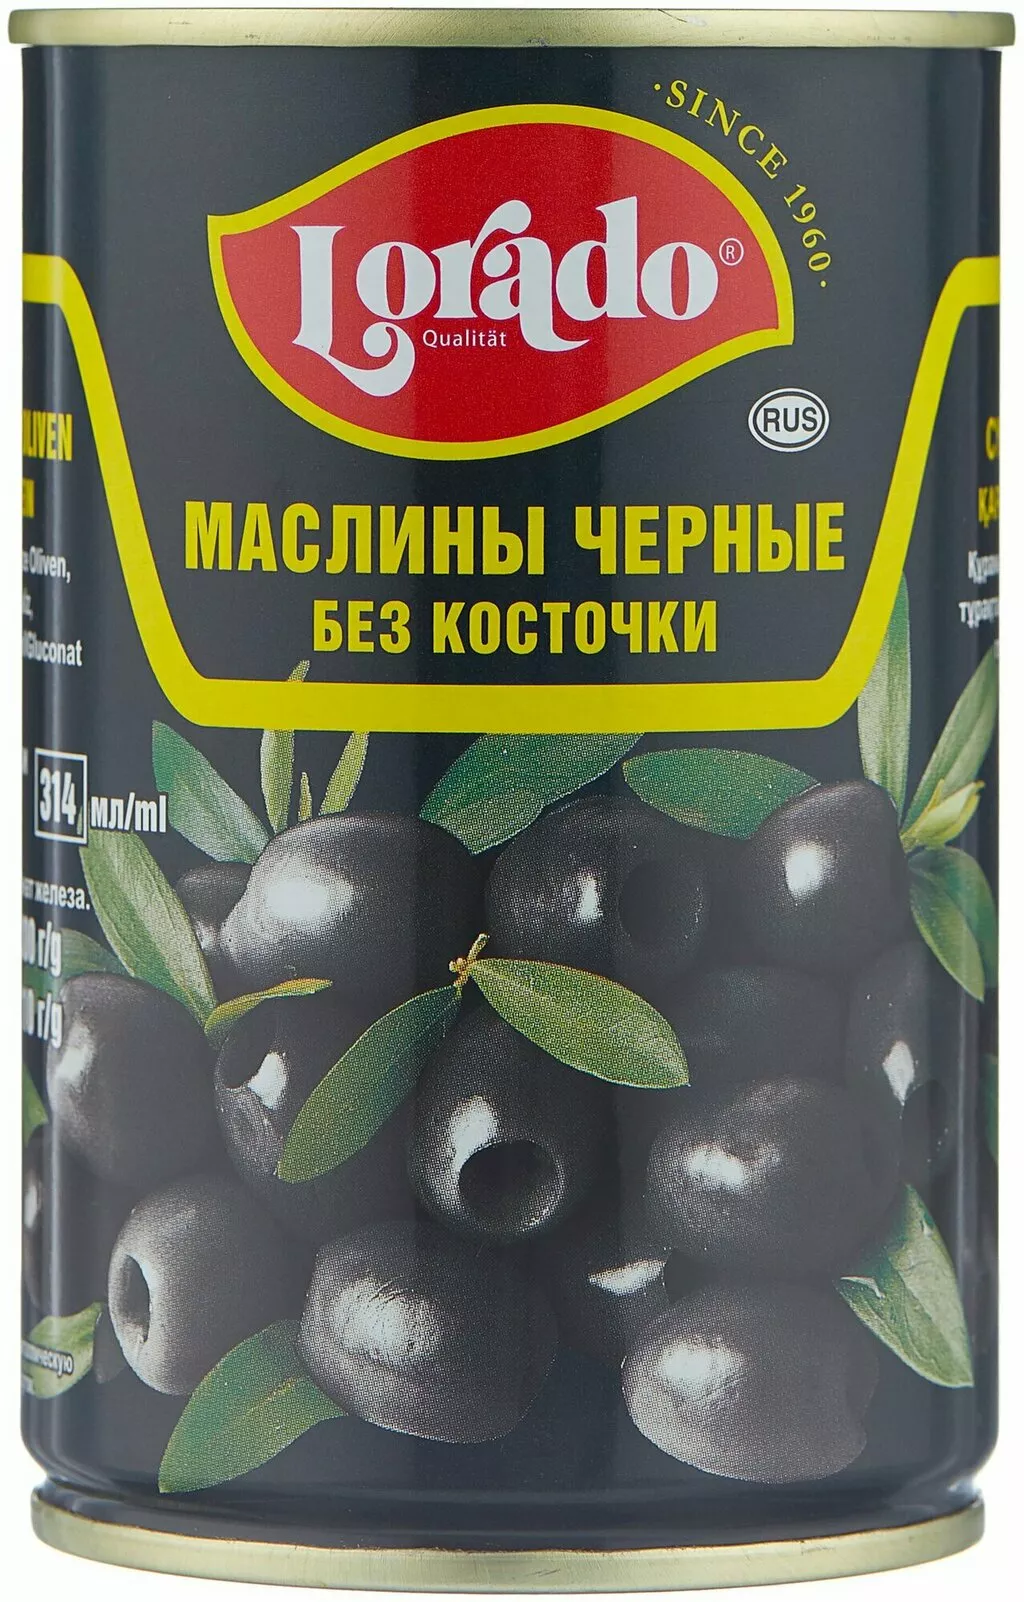 просрок оливок, маслин опт.  в Москве и Московской области 6